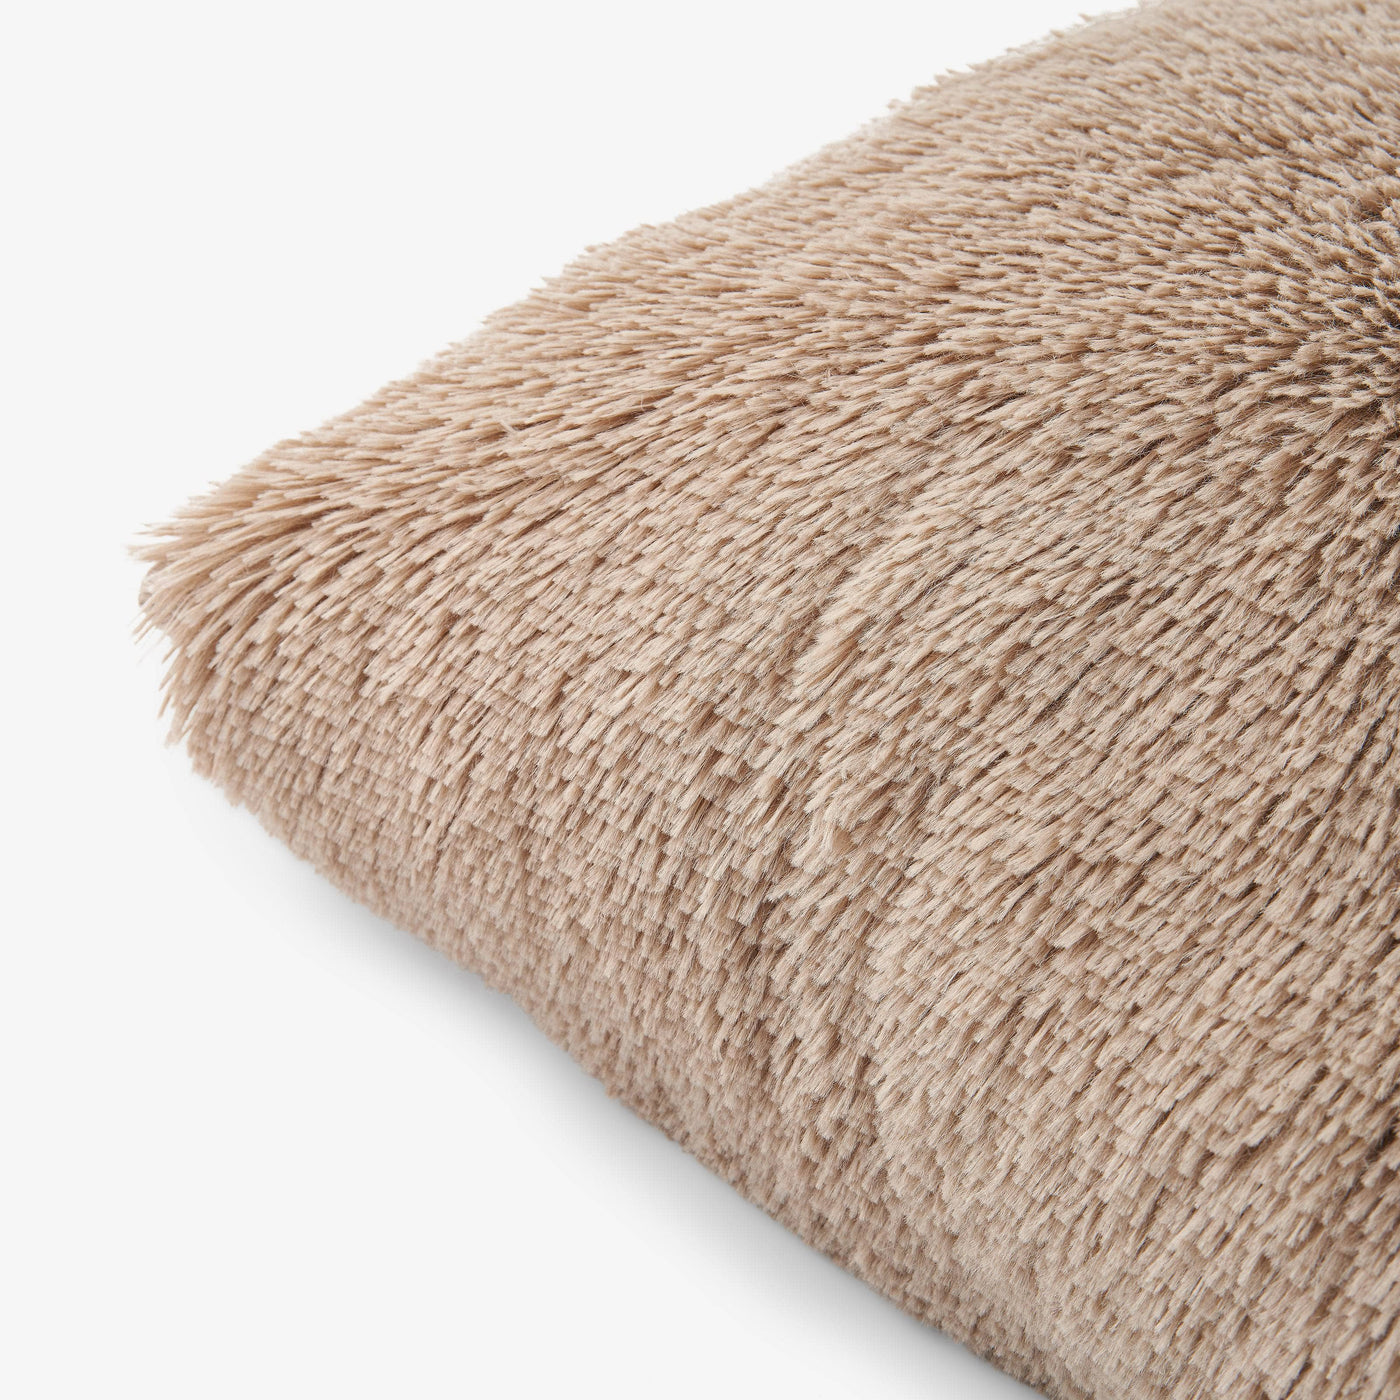 Cuddo Faux Fur Cushion Cover, Beige, 45x45 cm Cushion Covers sazy.com